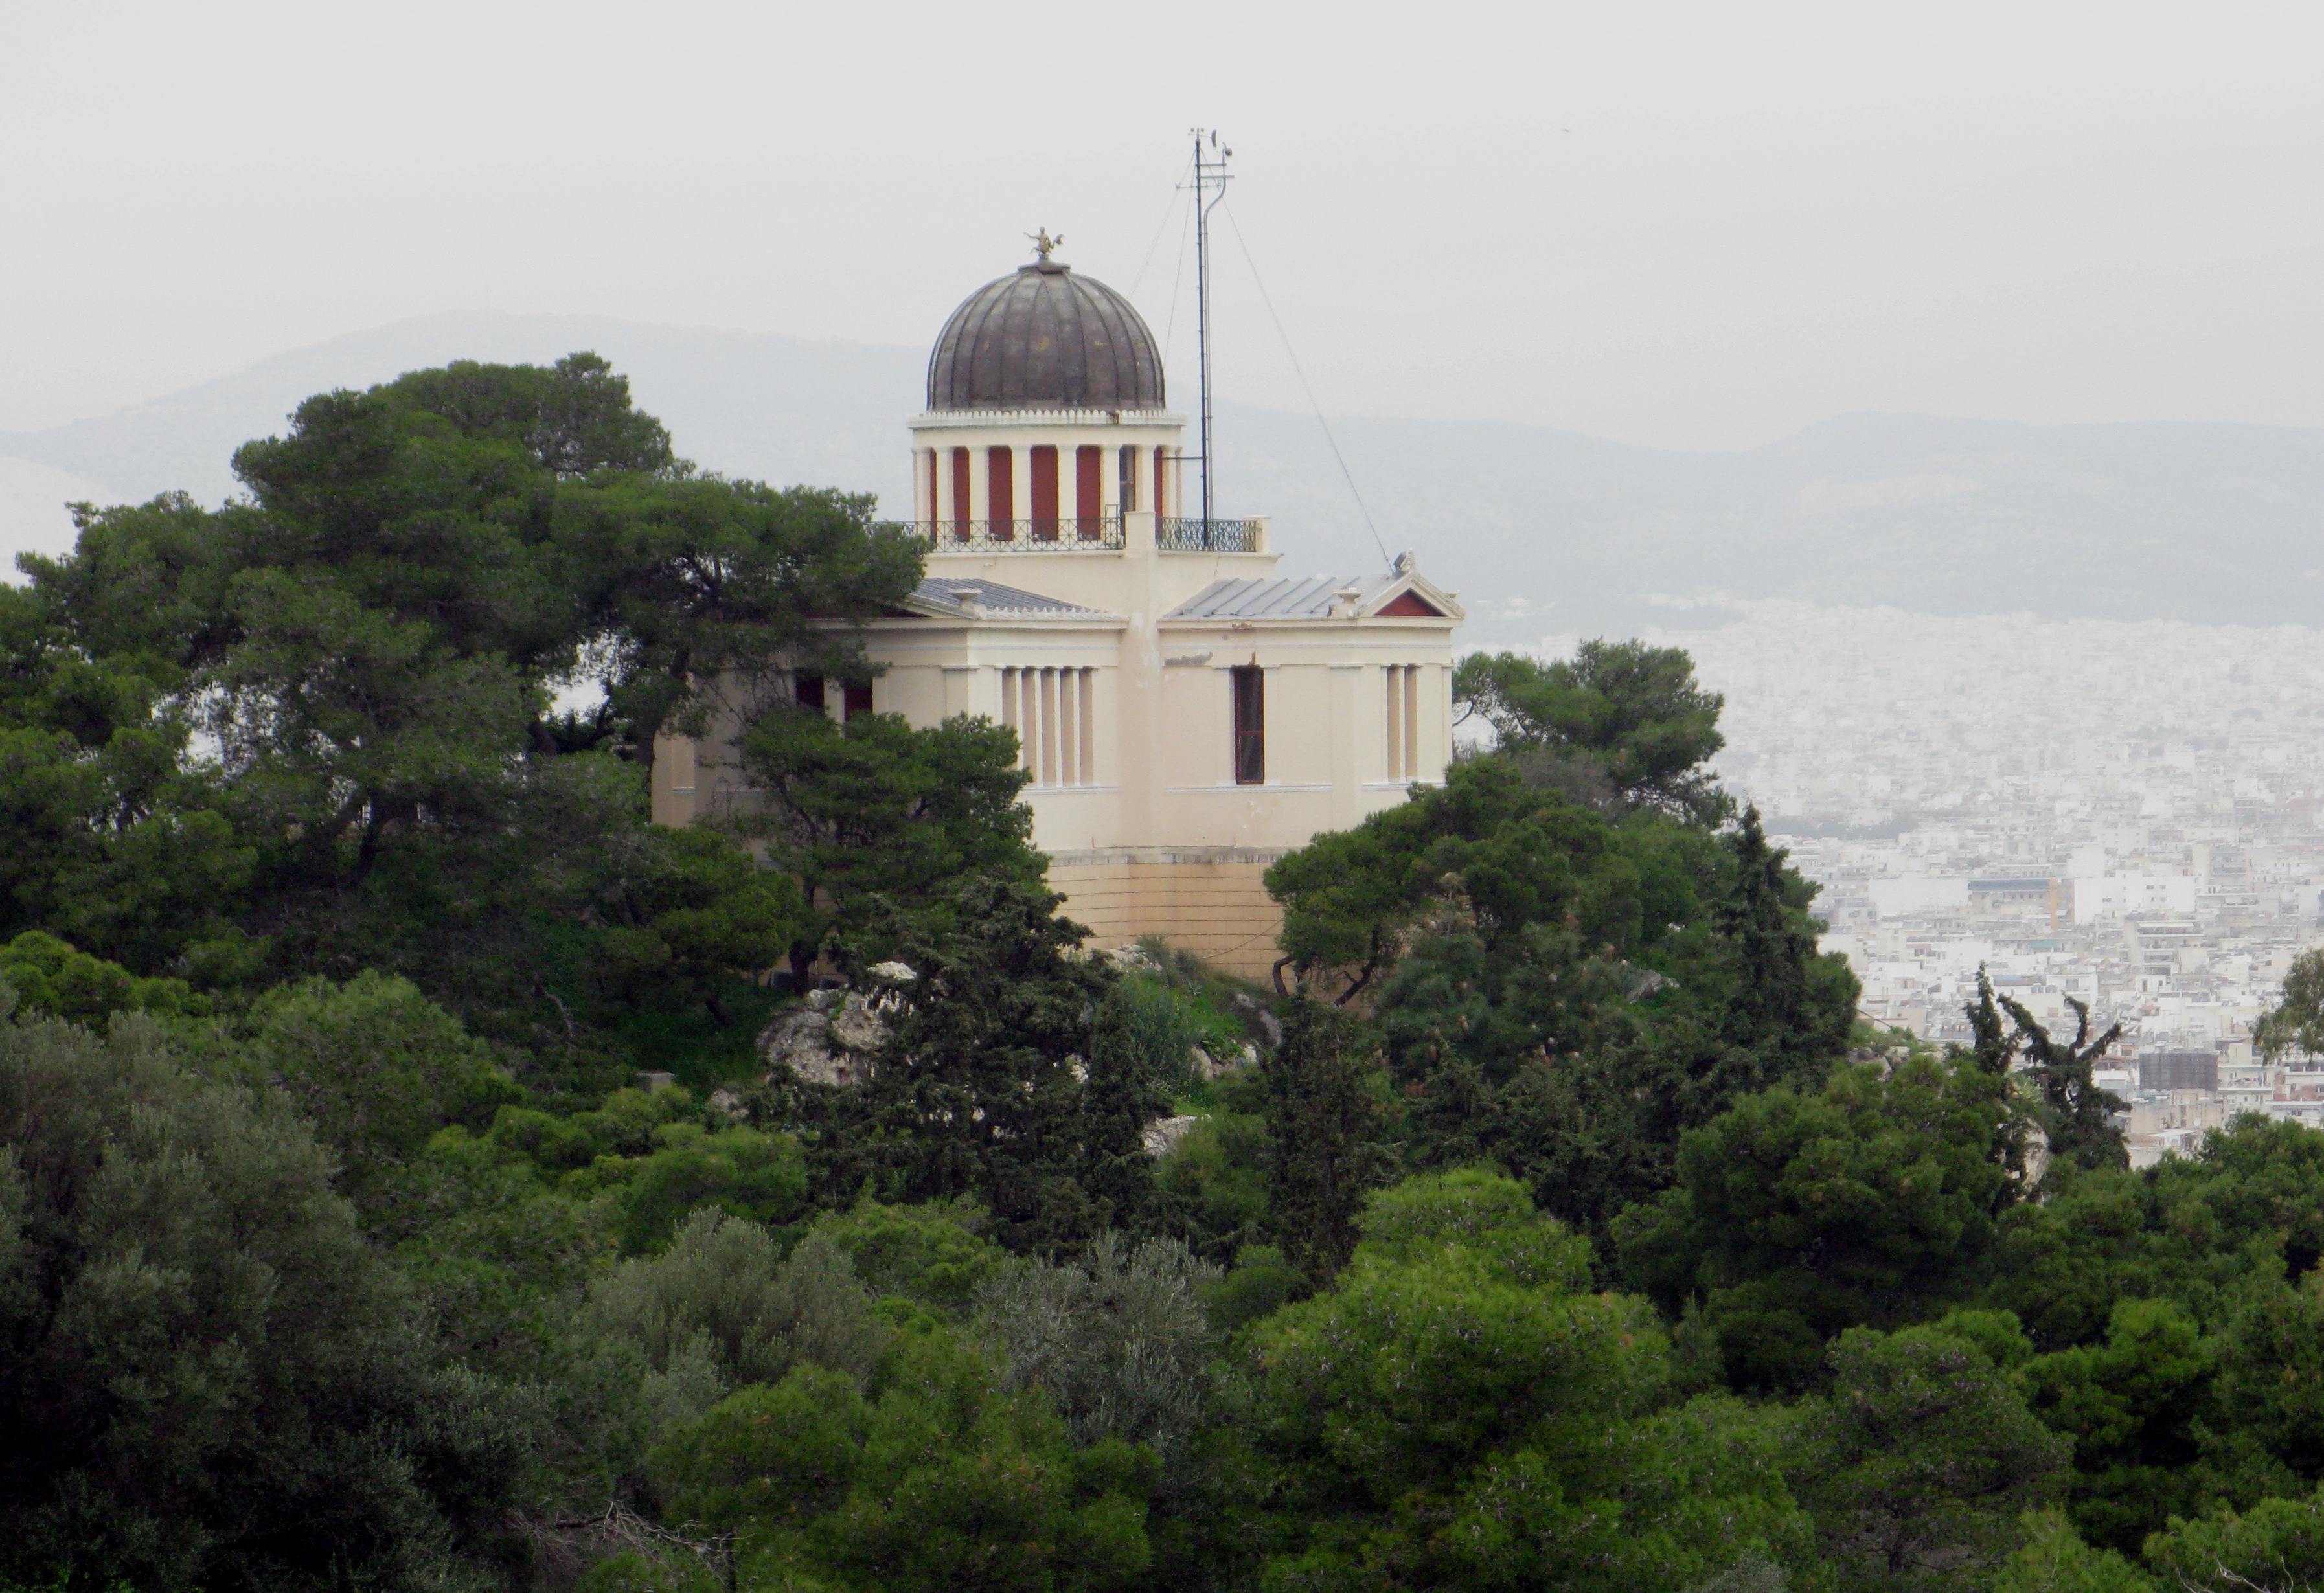 Μέχρι το 2015 θα έχει ολοκληρωθεί η ανέγερση του νέου κτιρίου του Γεωδυναμικού Ινστιτούτου του Εθνικού Αστεροσκοπείου Αθηνών στην Πεντέλη